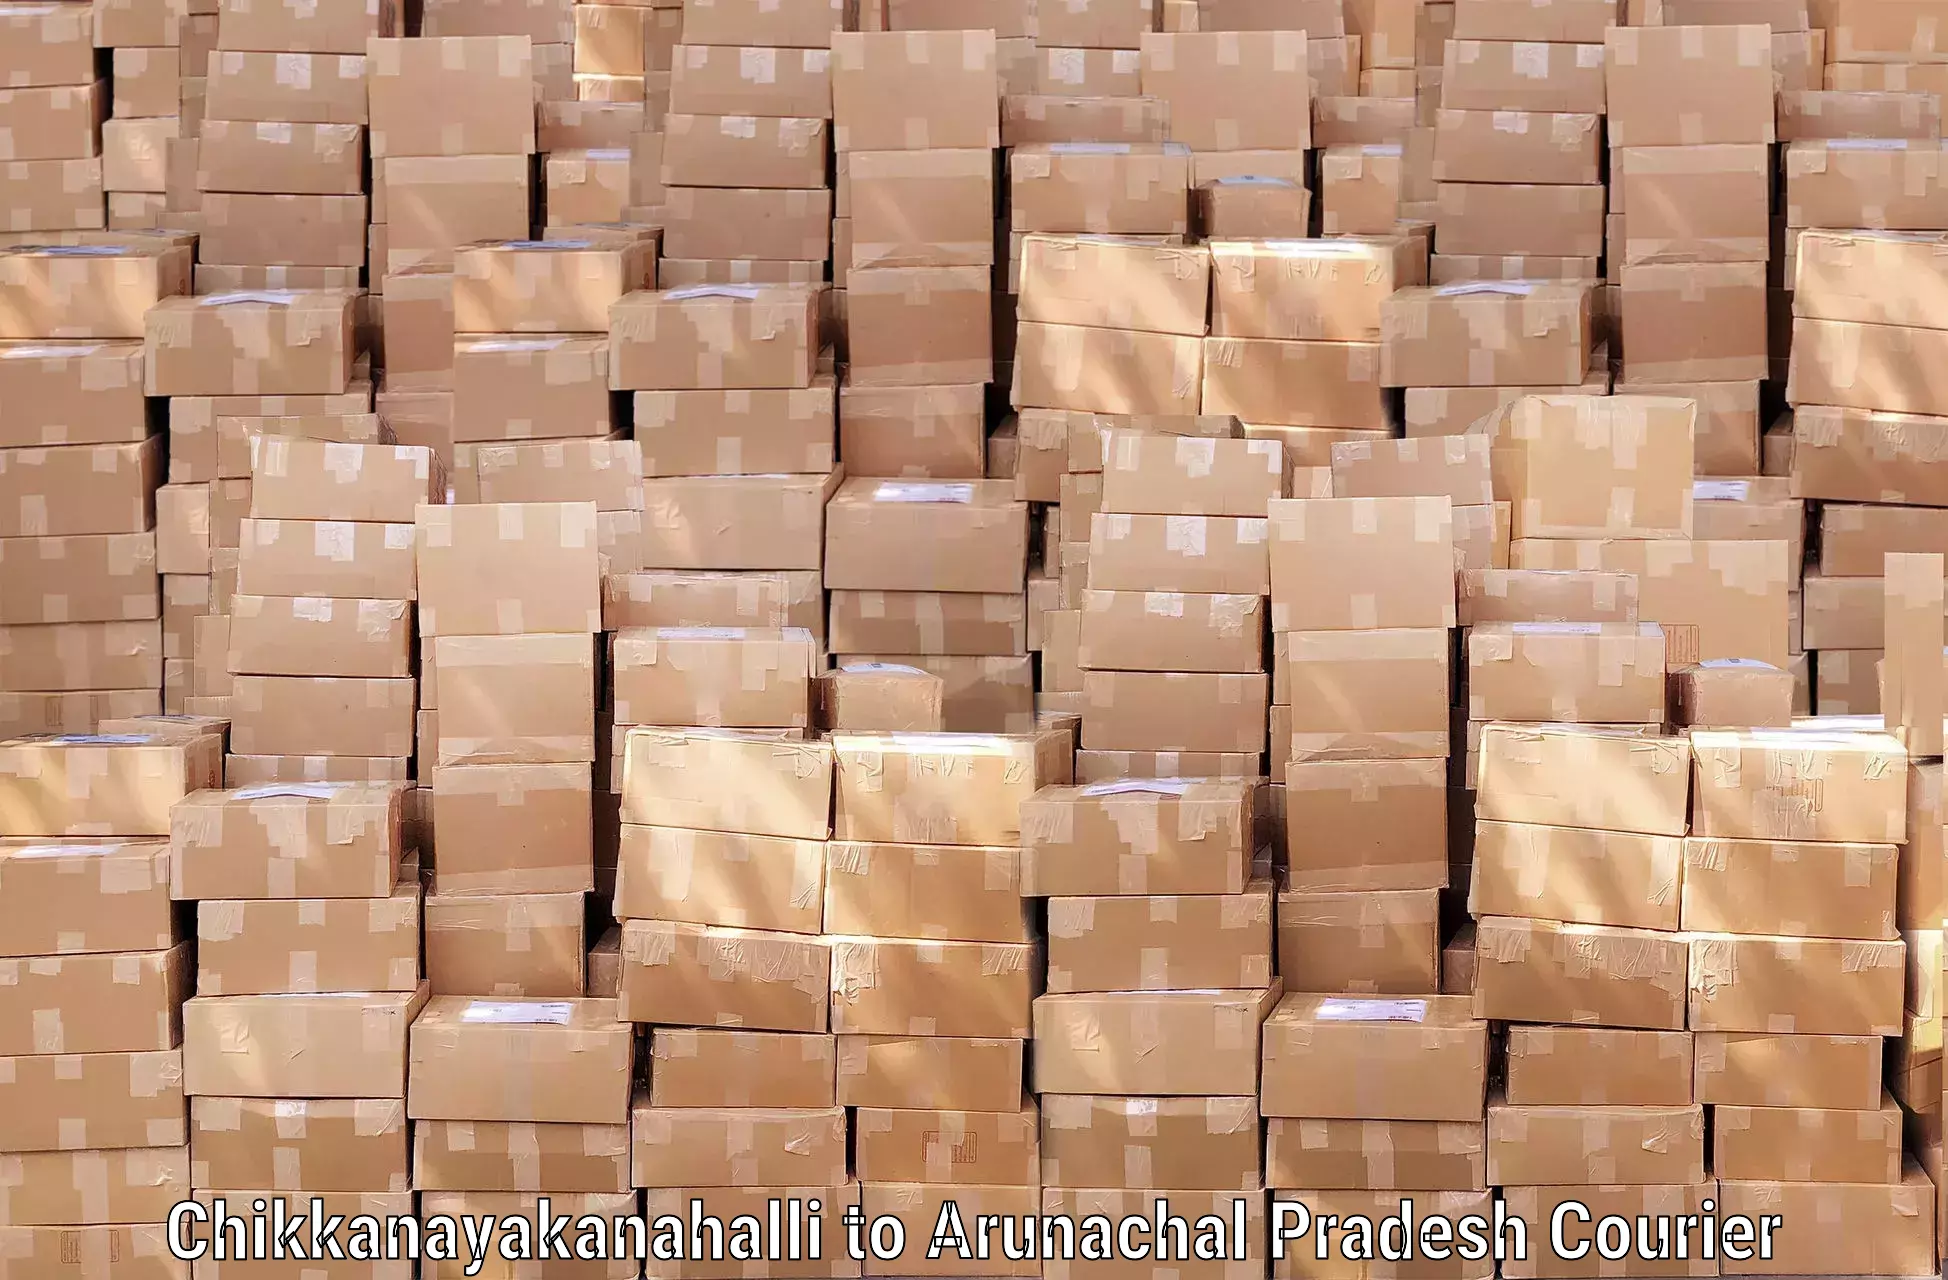 Baggage shipping logistics in Chikkanayakanahalli to Arunachal Pradesh